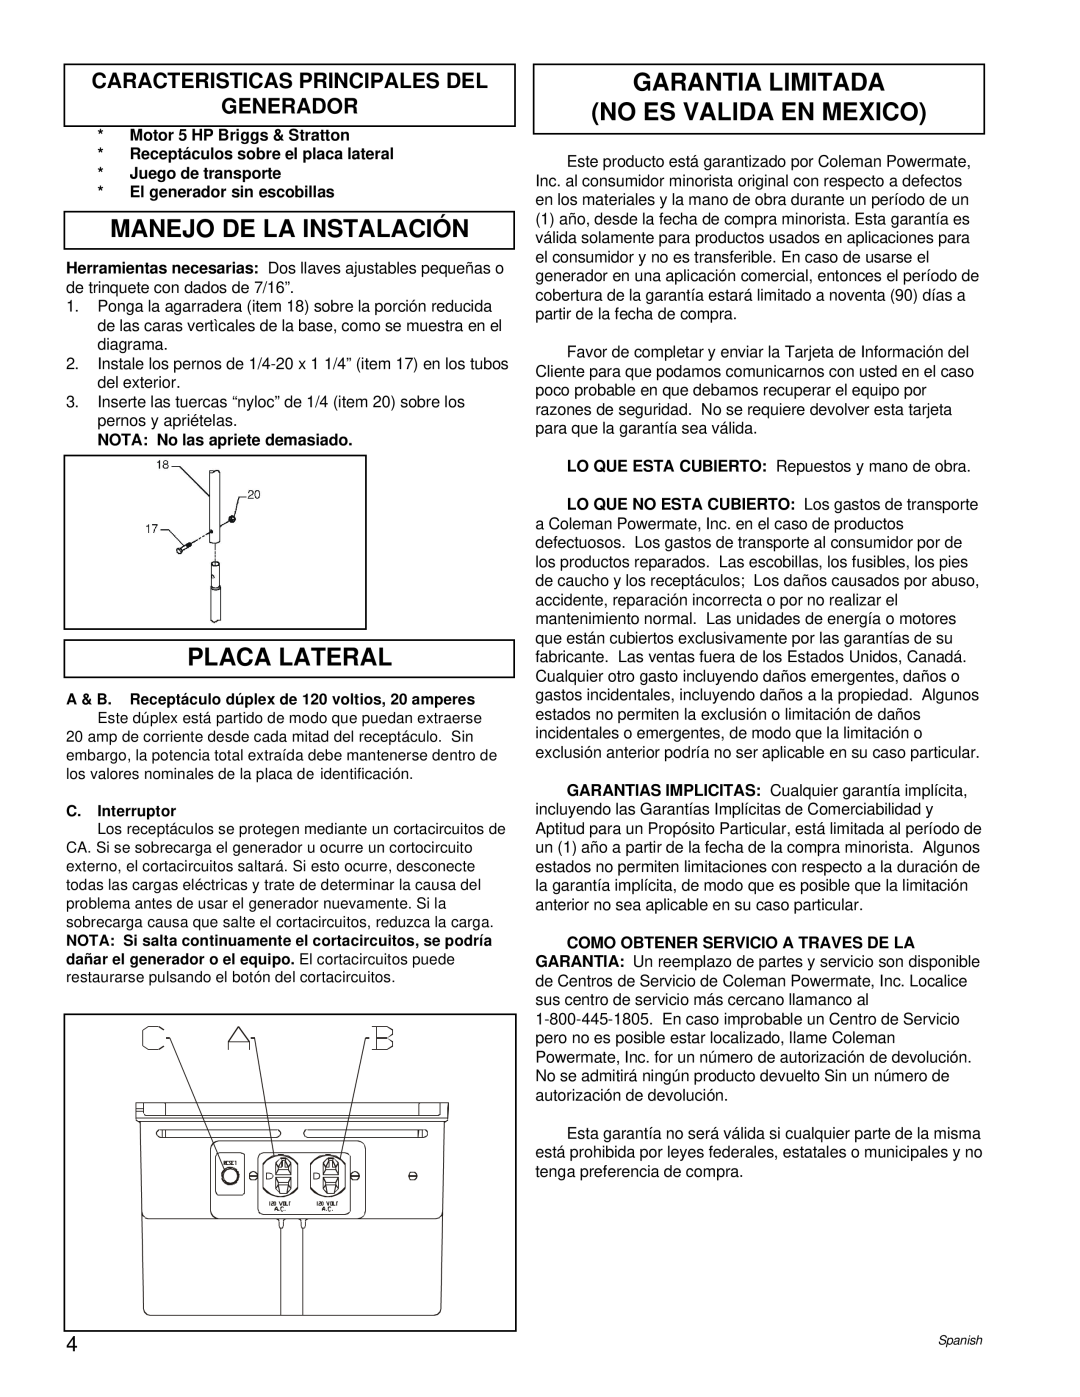 Powermate PM0422505.02 Manejo De La Instalación, Placa Lateral, Garantia Limitada No Es Valida En Mexico, C.Interruptor 